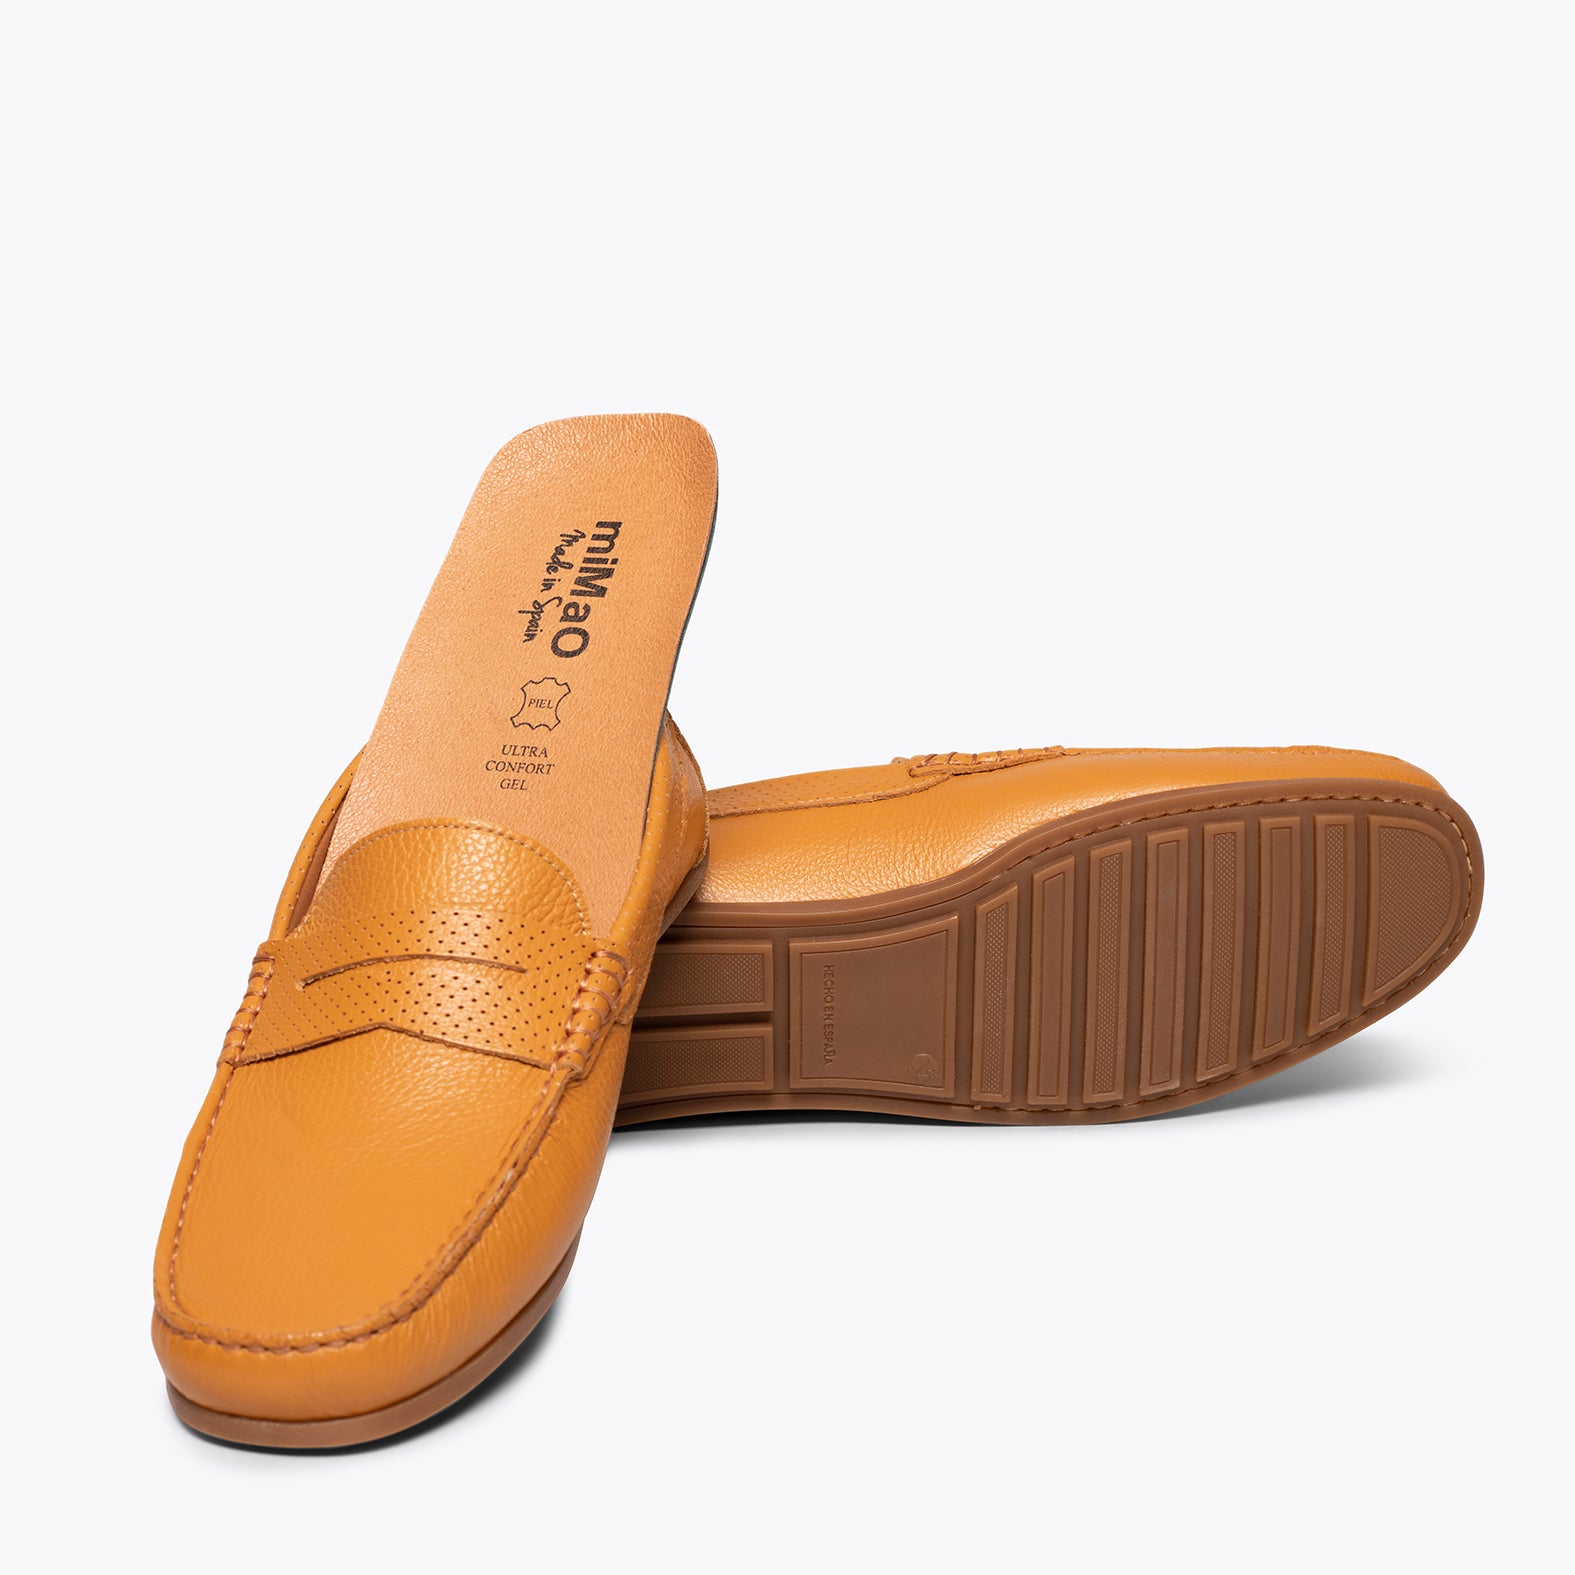 MOCCASIN – ORANGE nappa leather loafer for men